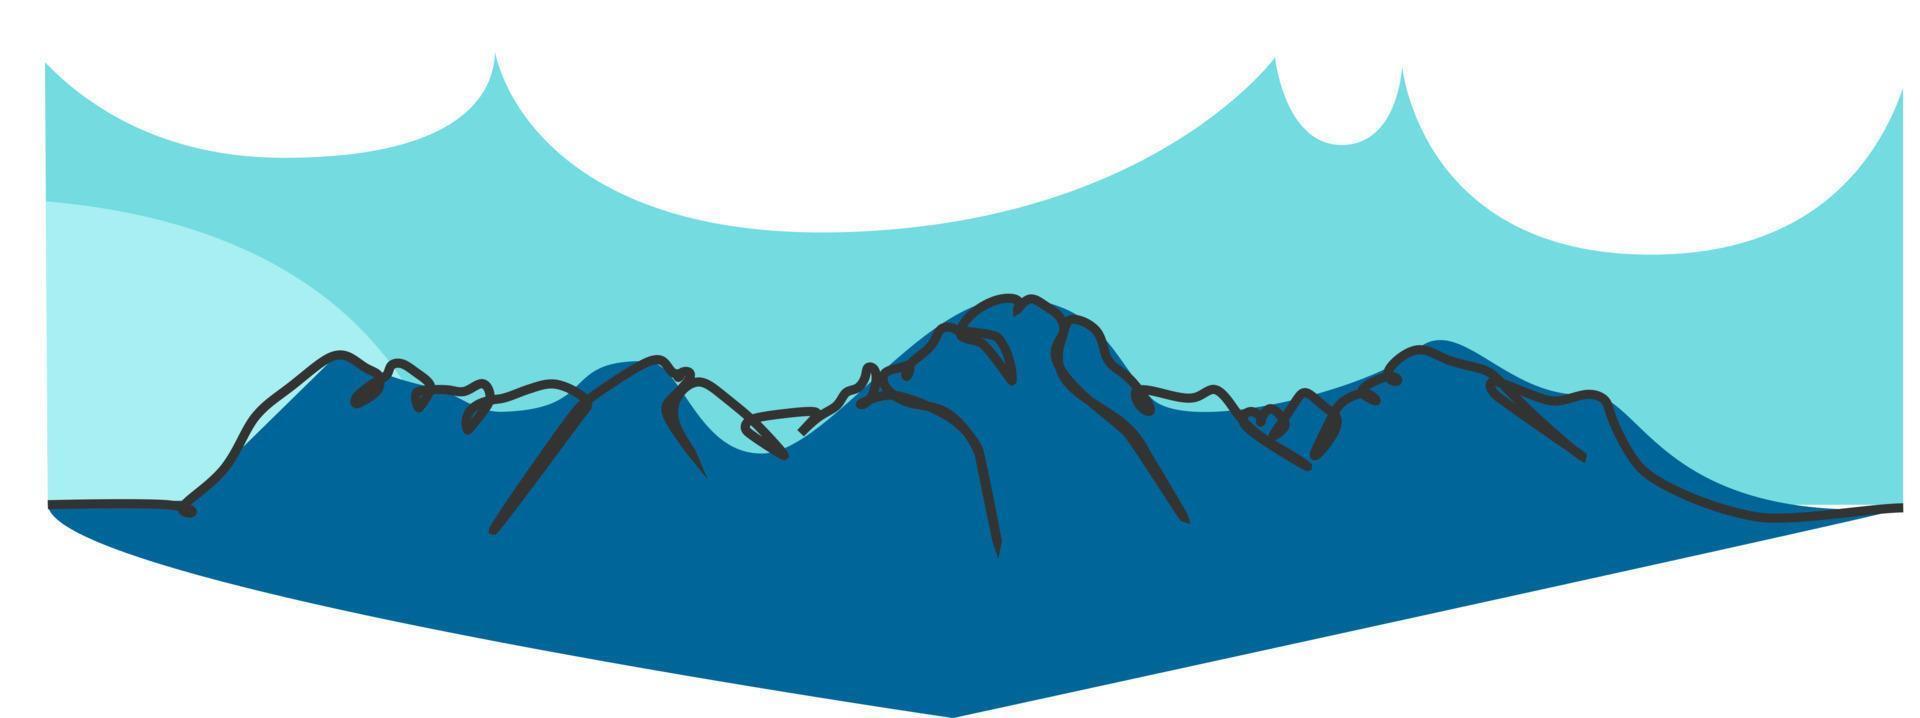 bergen enkel platt Färg enda kontinuerlig linje teckning. vektor illustration för natur och landskap begrepp design